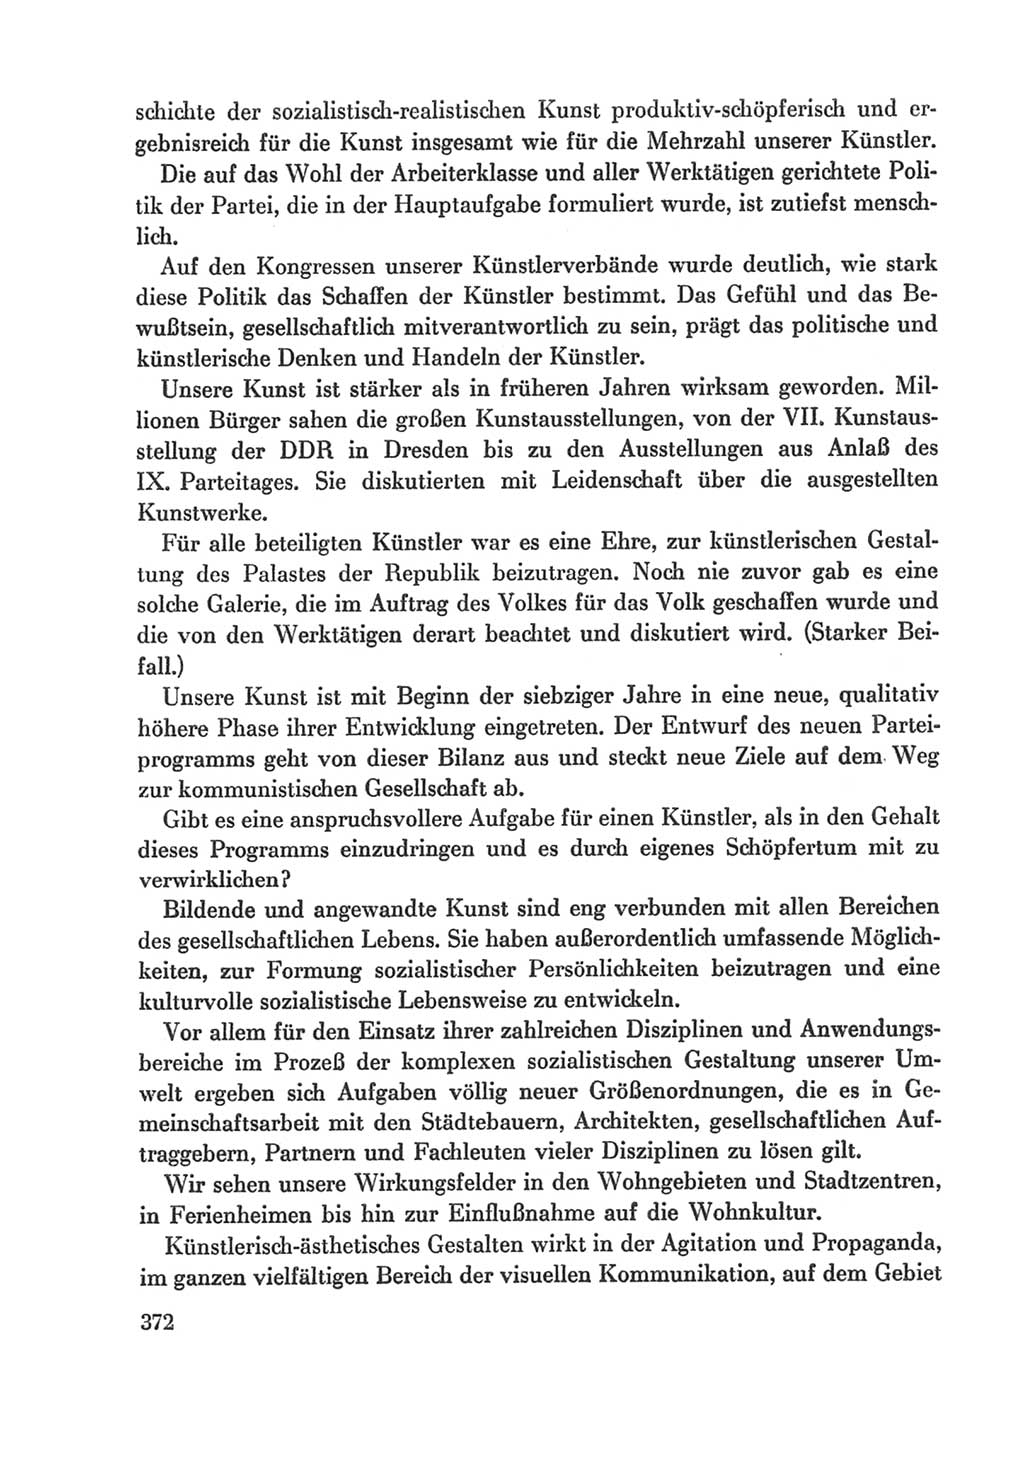 Protokoll der Verhandlungen des Ⅸ. Parteitages der Sozialistischen Einheitspartei Deutschlands (SED) [Deutsche Demokratische Republik (DDR)] 1976, Band 1, Seite 372 (Prot. Verh. Ⅸ. PT SED DDR 1976, Bd. 1, S. 372)